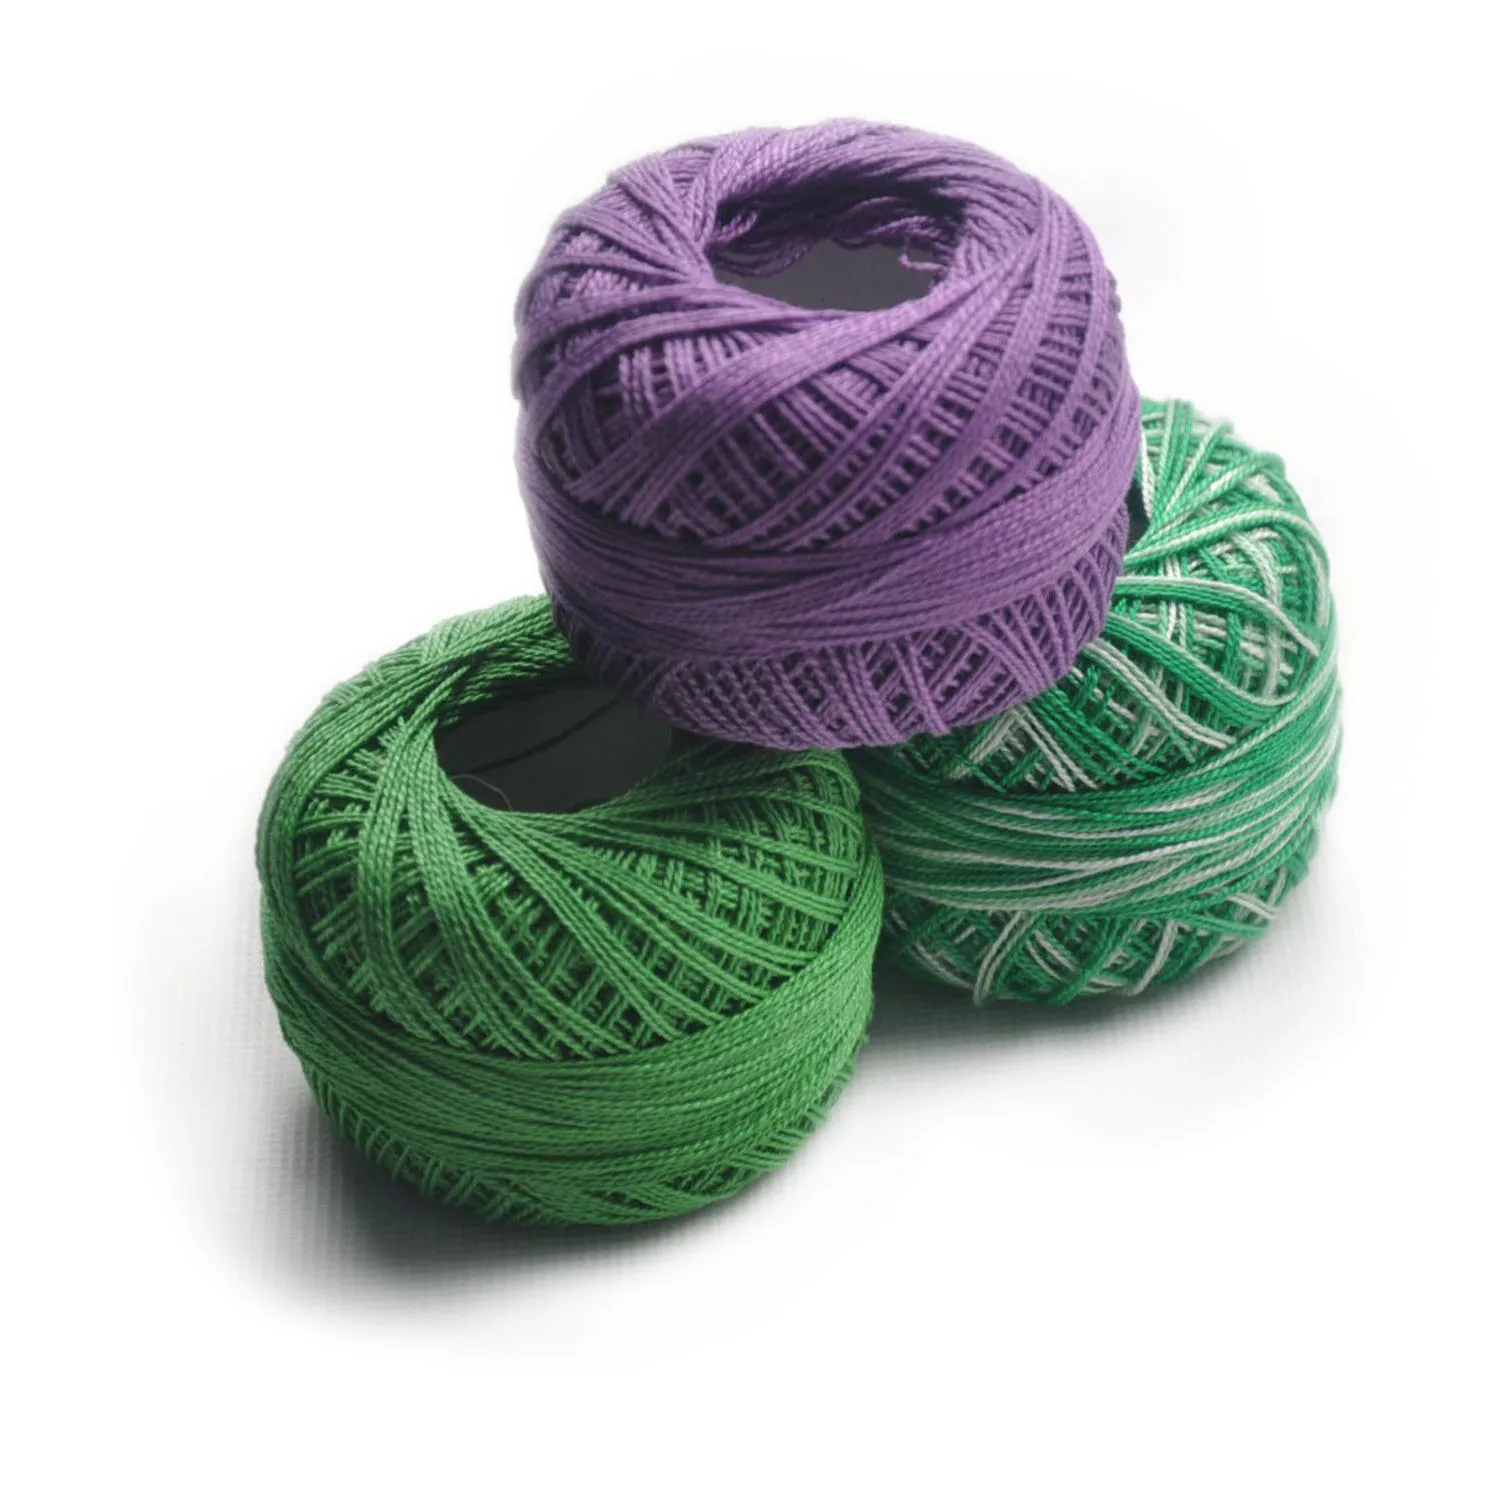 China Yiwu cotton yarn knitting patterns